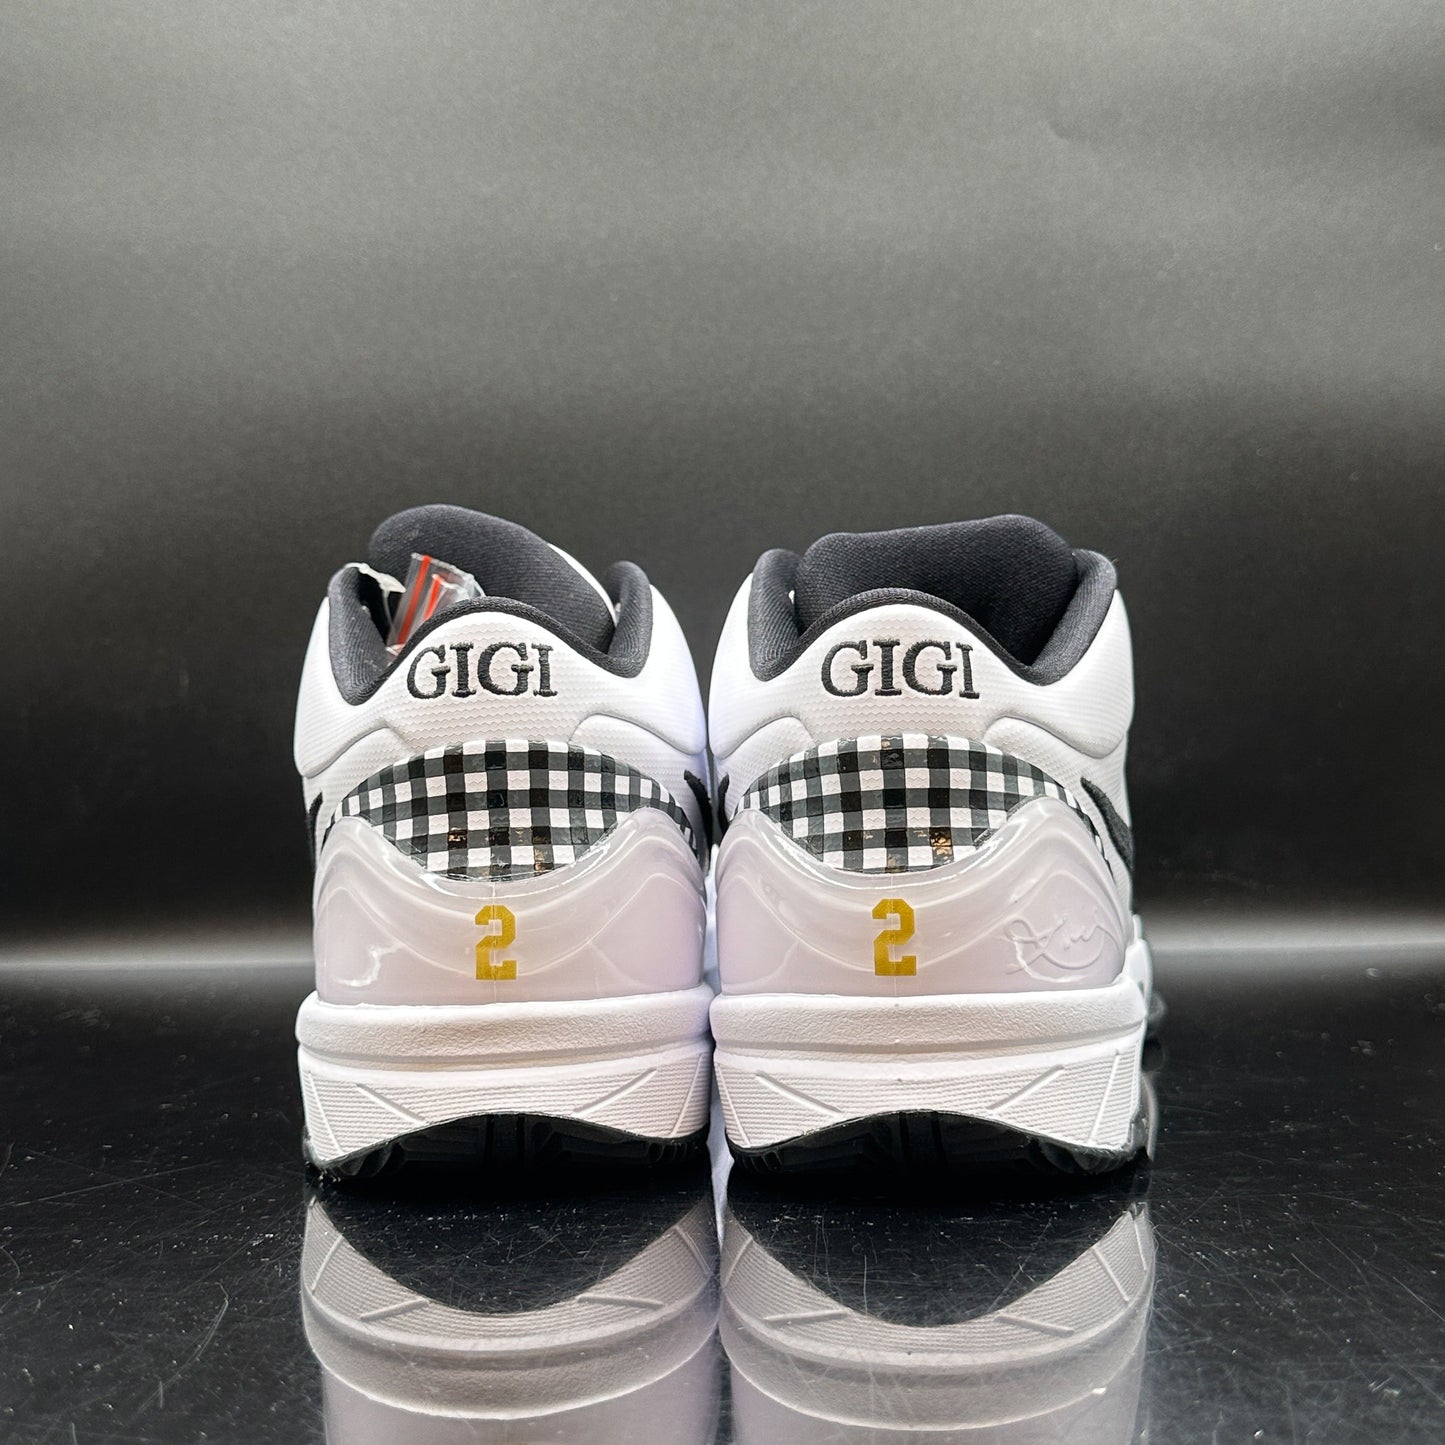 Nike Kobe 4 Protro Mambacita Gigi (Multiple Sizes) (DS)